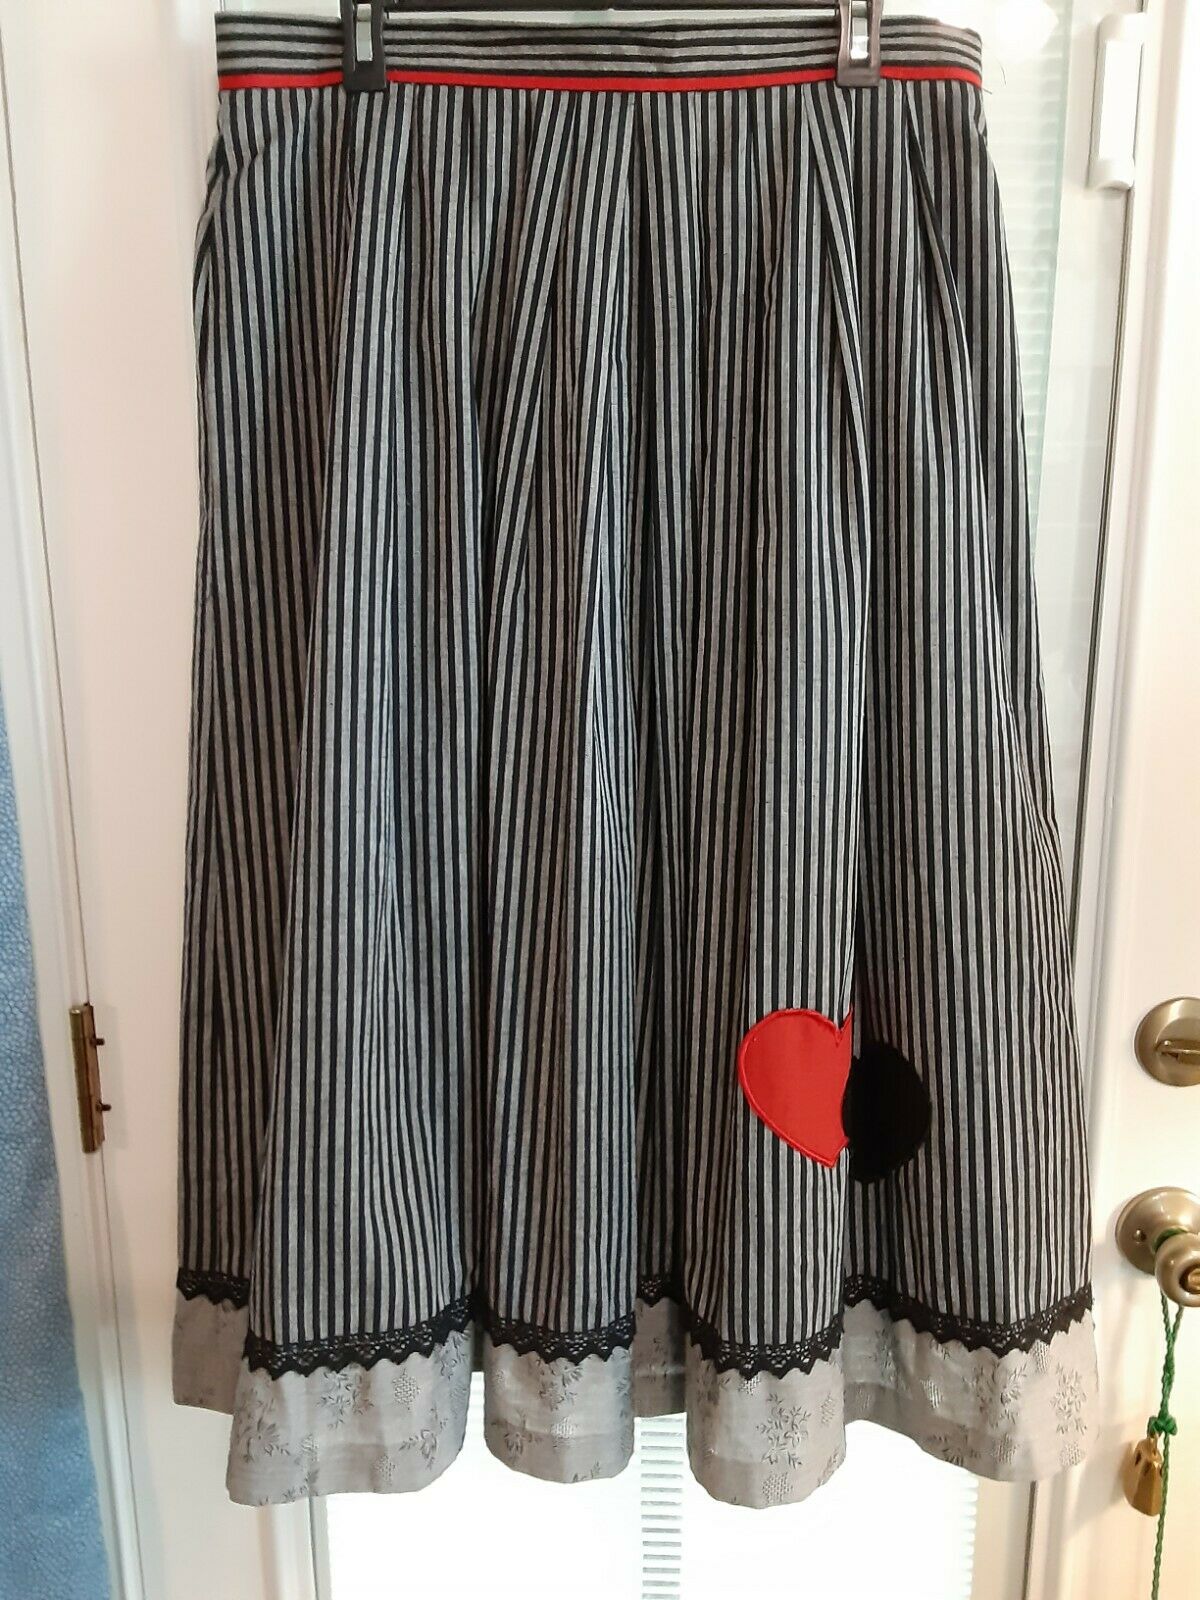 Alphorn Original Tractenmode Size 46 Cotton Skirt Zipper Button Closure Lined